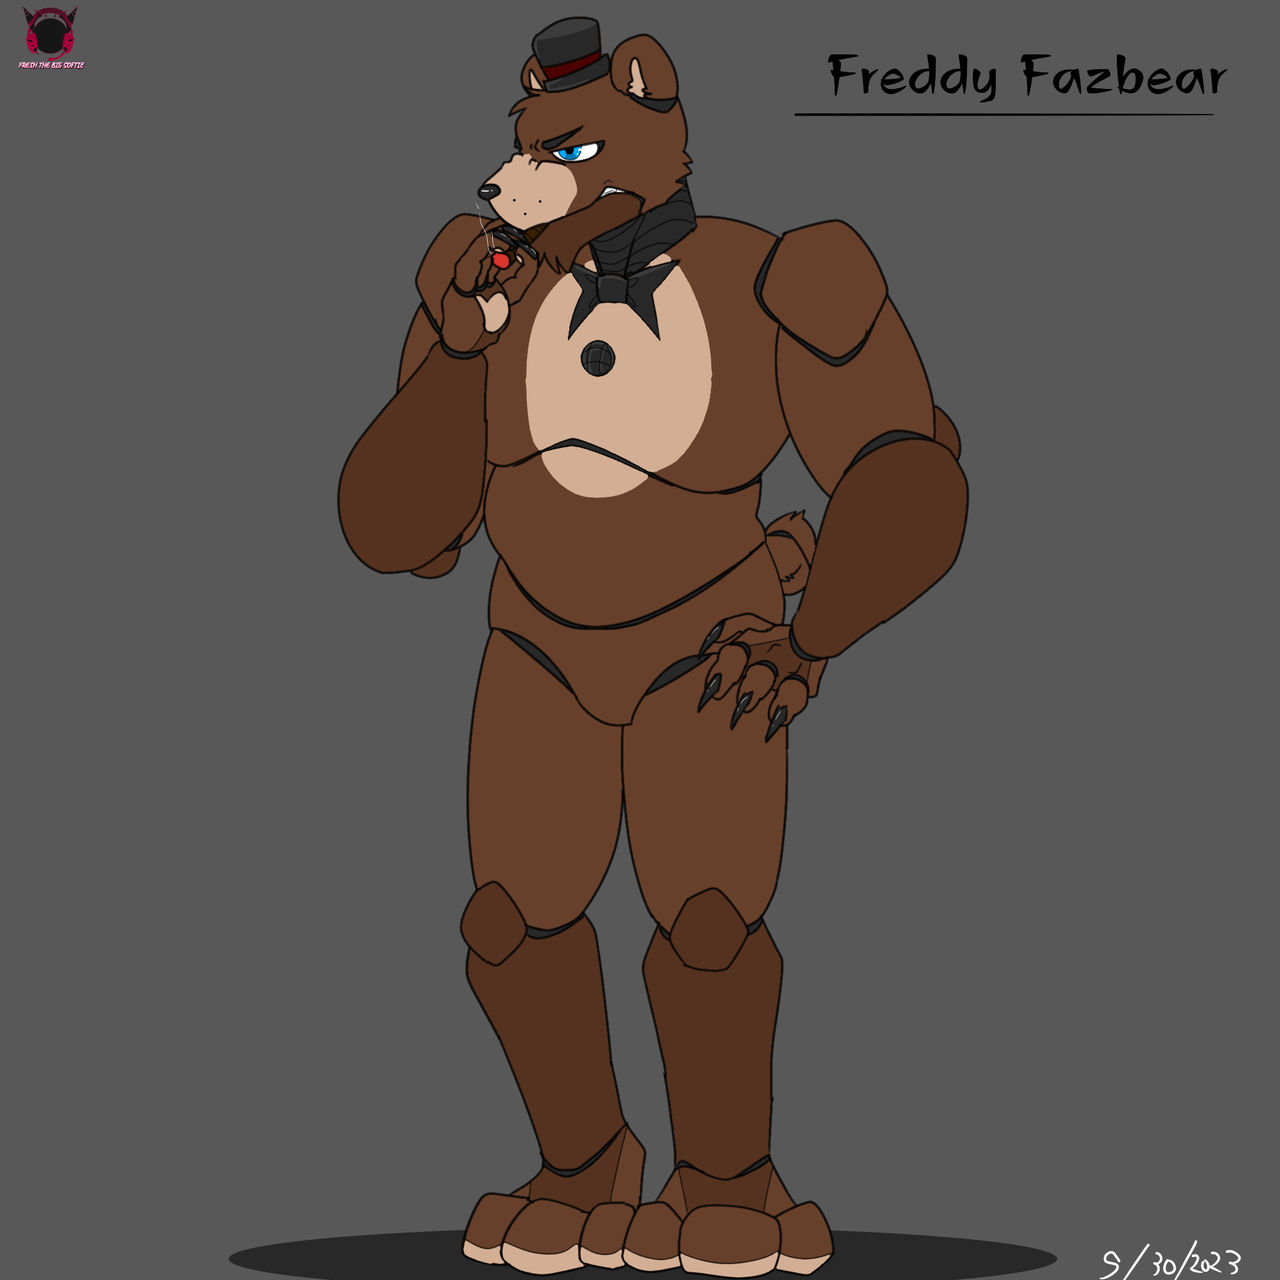 Freddy Fazbear Fnaf 1 by emirtah on DeviantArt